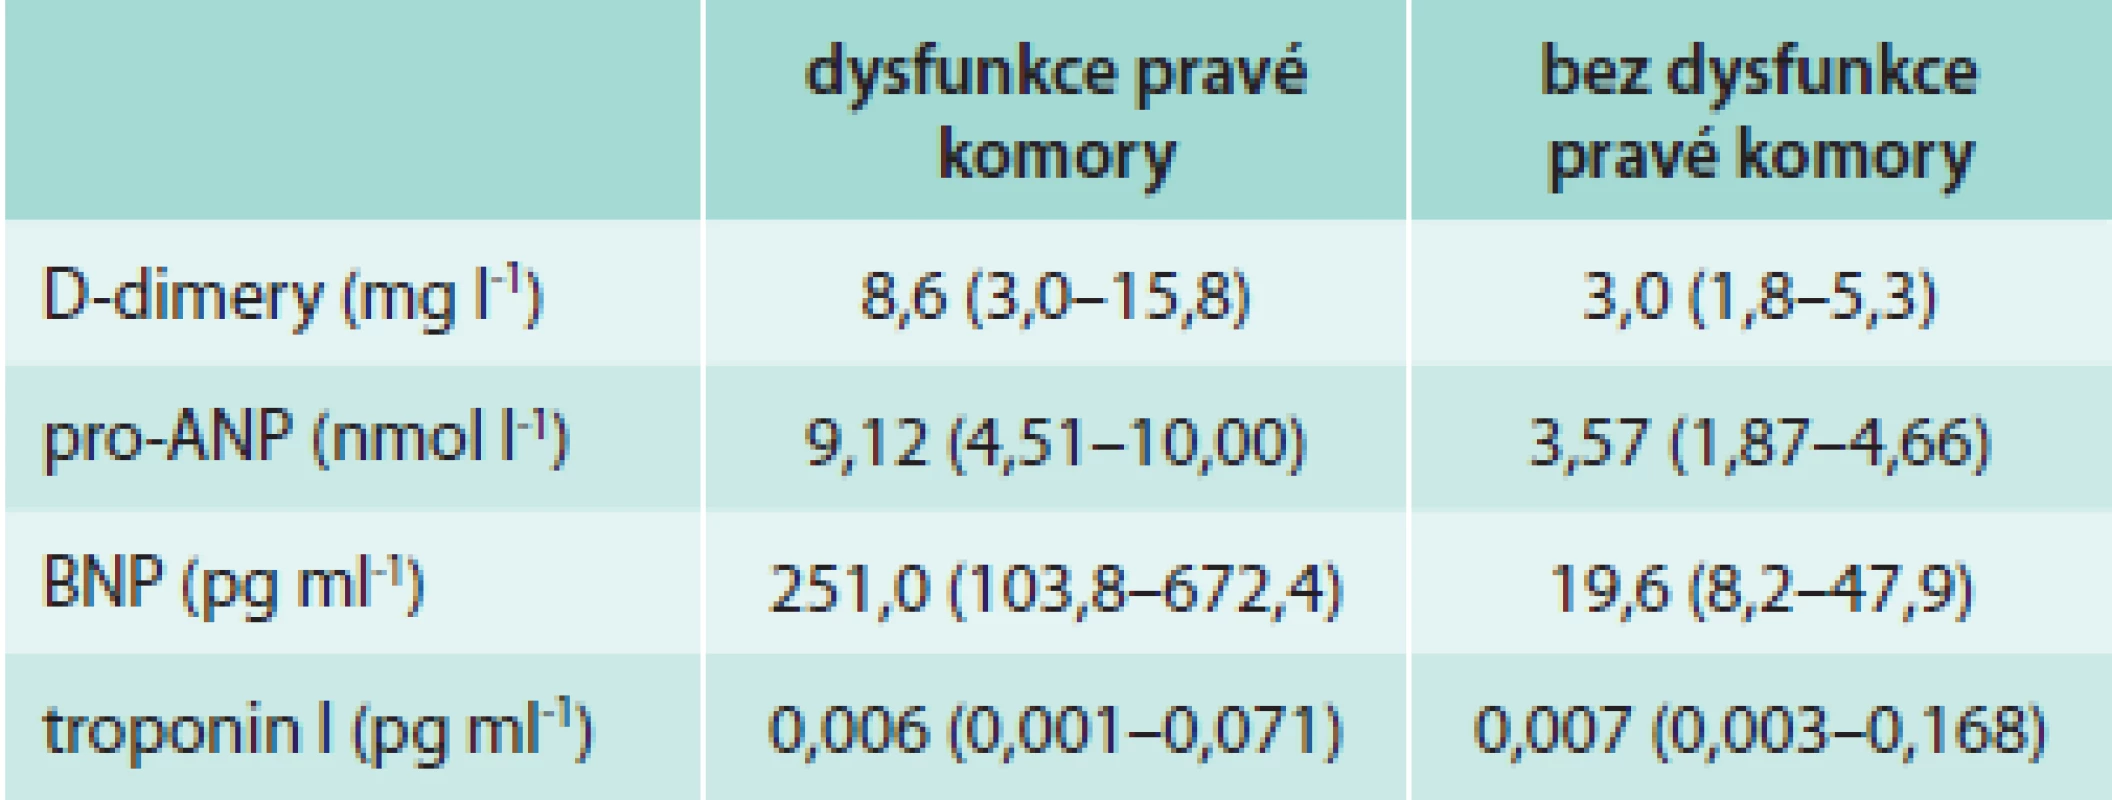 Hodnoty různých biomarkerů u plicní embolie s dysfunkcí a bez dysfunkce pravé komory (RVD). 
Upraveno podle [3].